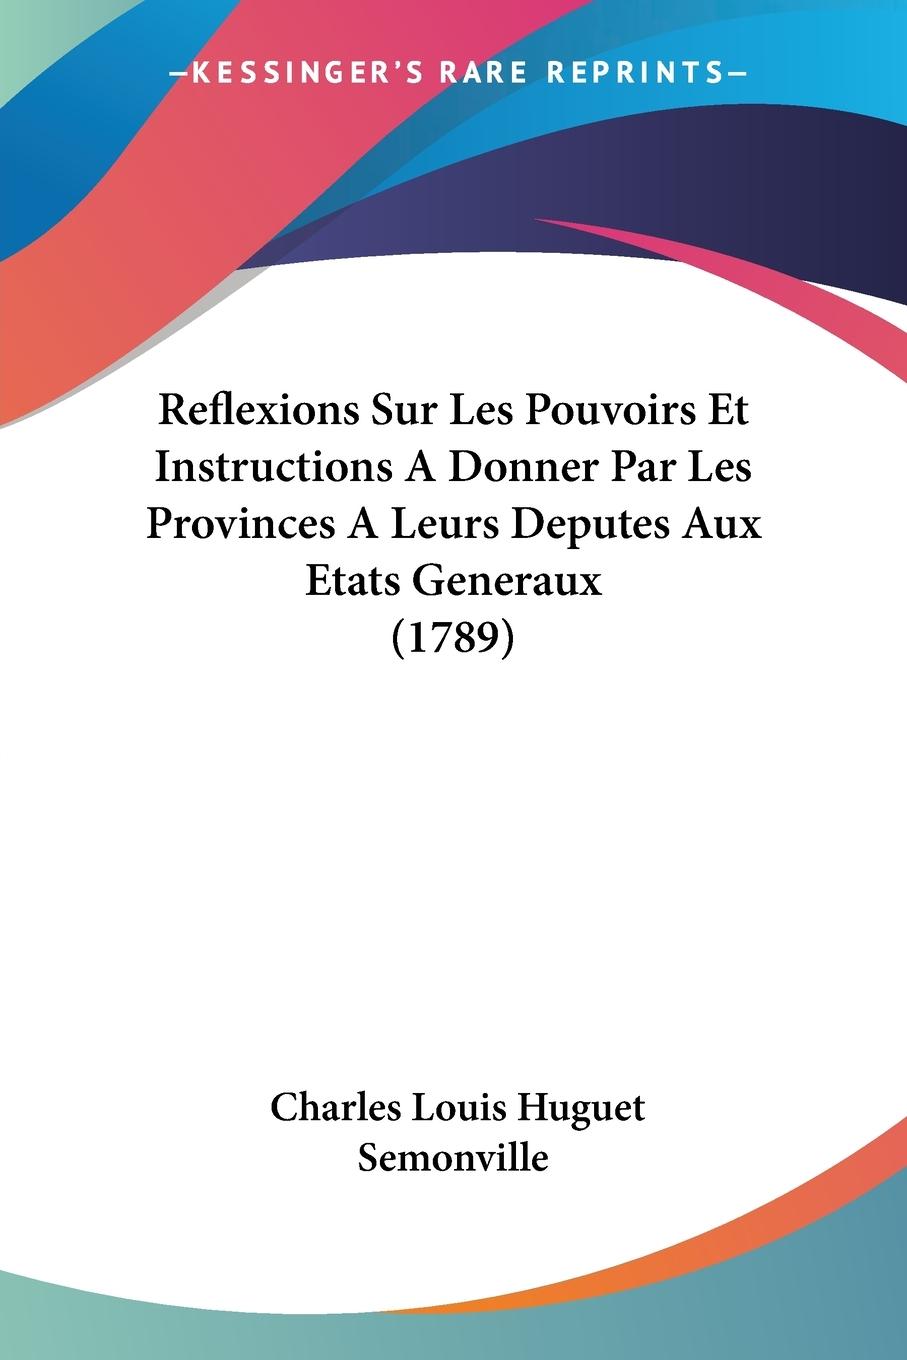 Reflexions Sur Les Pouvoirs Et Instructions A Donner Par Les Provinces A Leurs Deputes Aux Etats Generaux (1789) - Semonville, Charles Louis Huguet